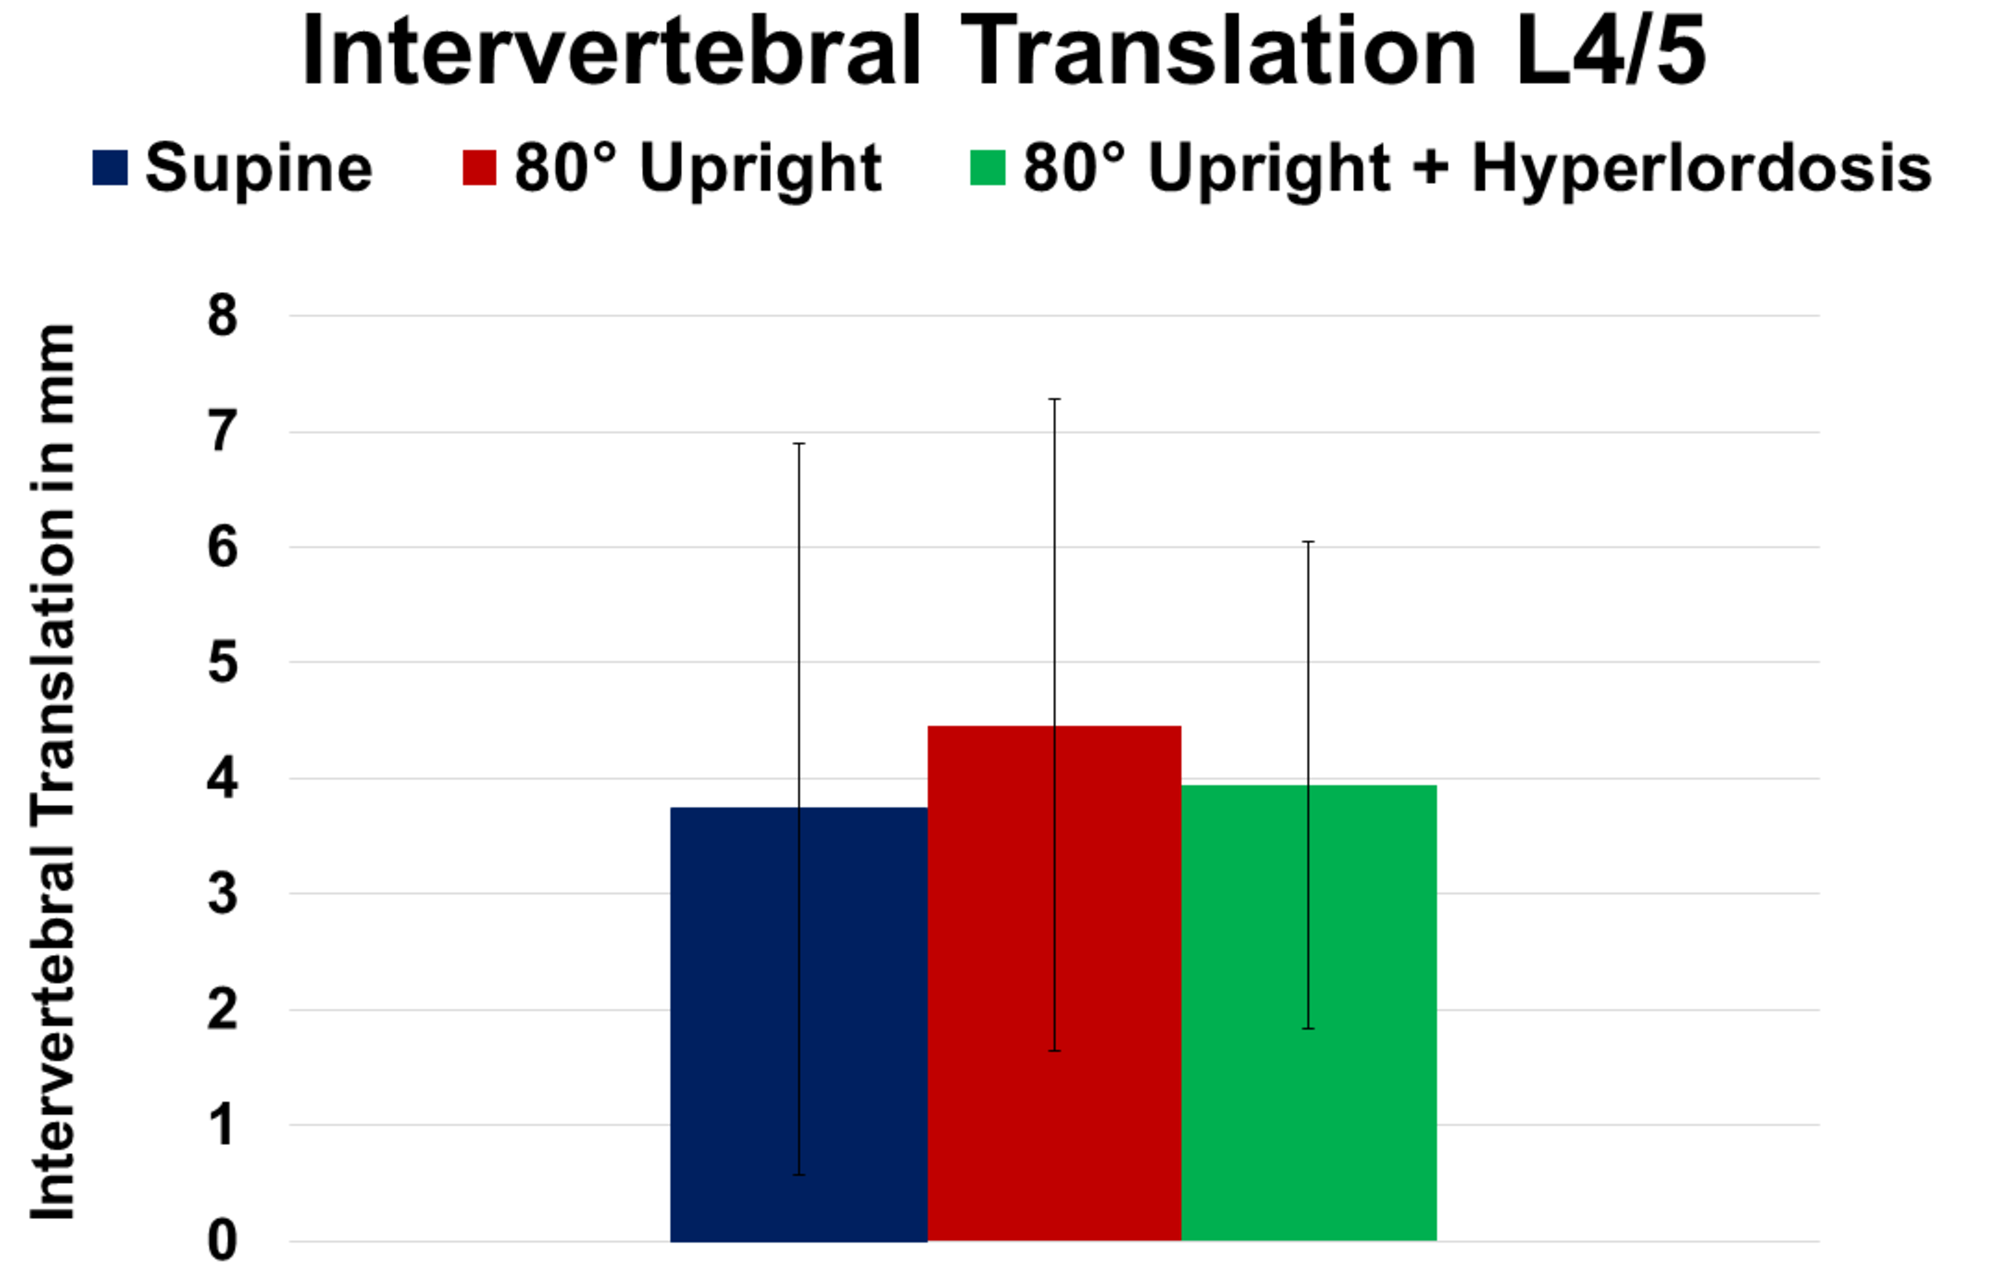 change-of-intervertebral-translation-at-spinal-level-l4/5-in